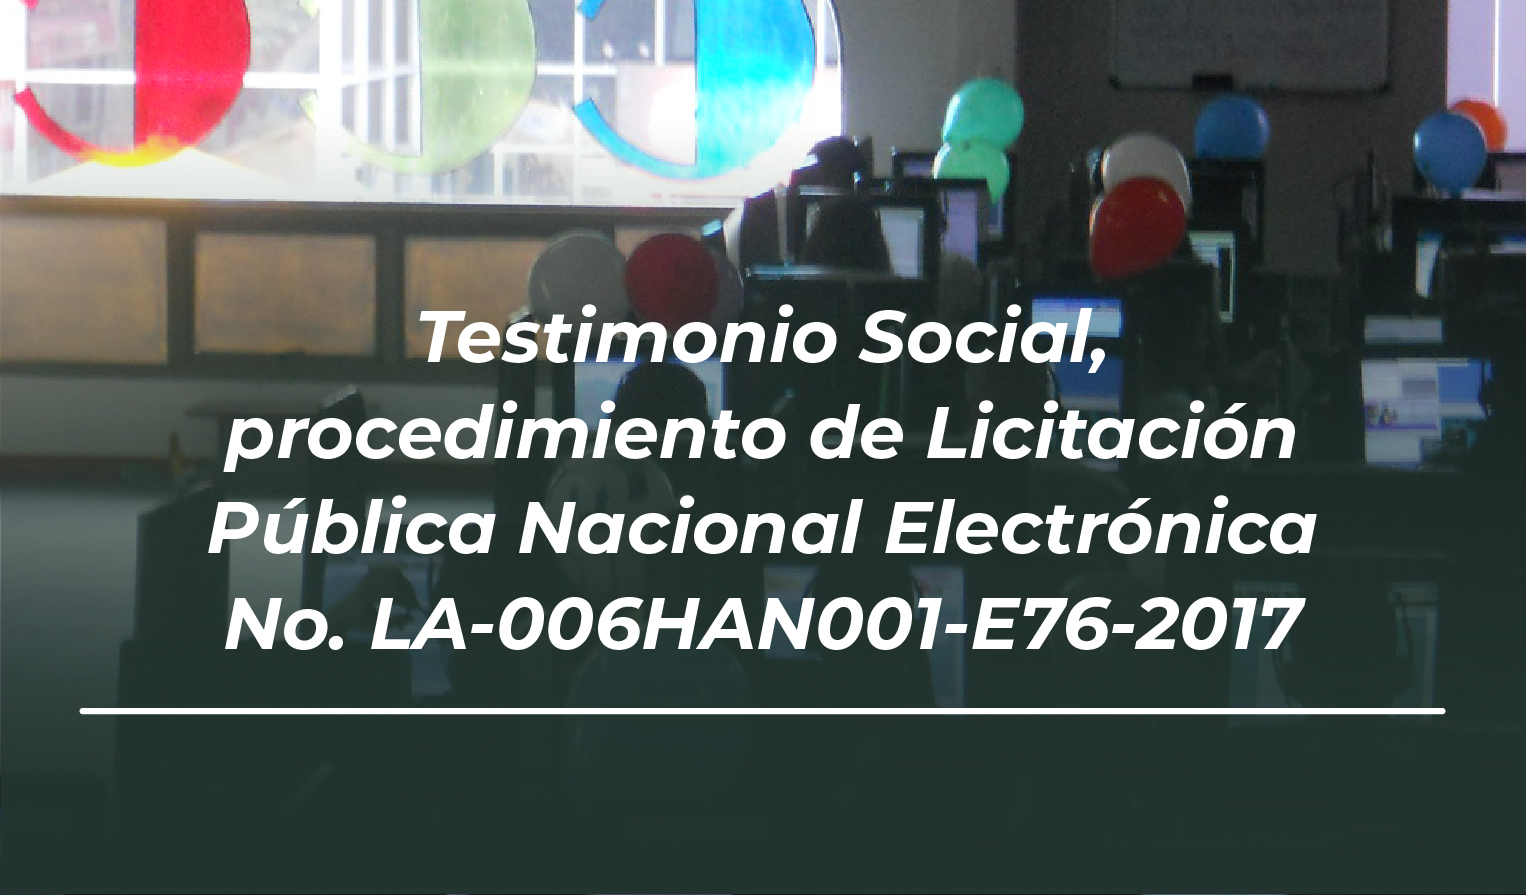 Testimonio social LA-006HAN001